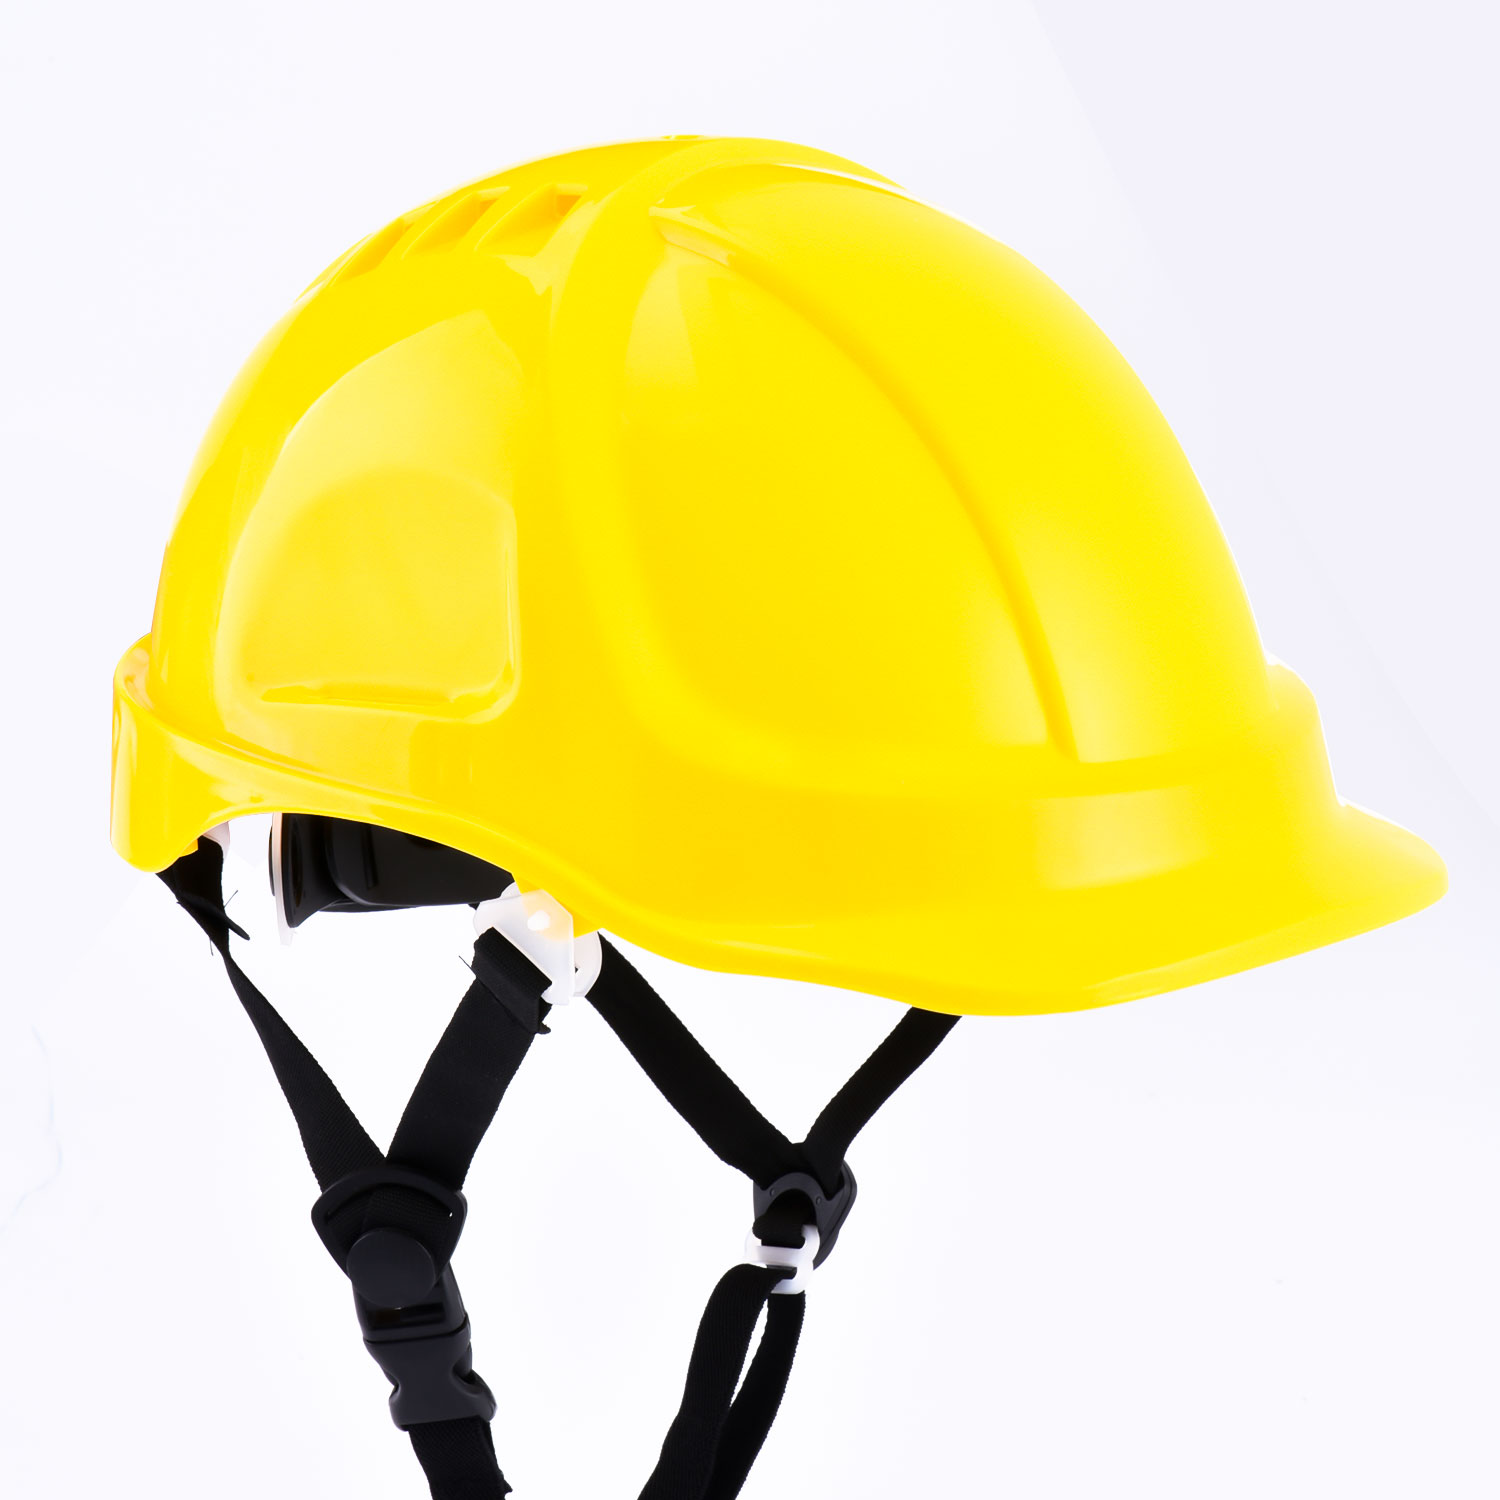 Casco de trabajo de seguridad amarillo W-037